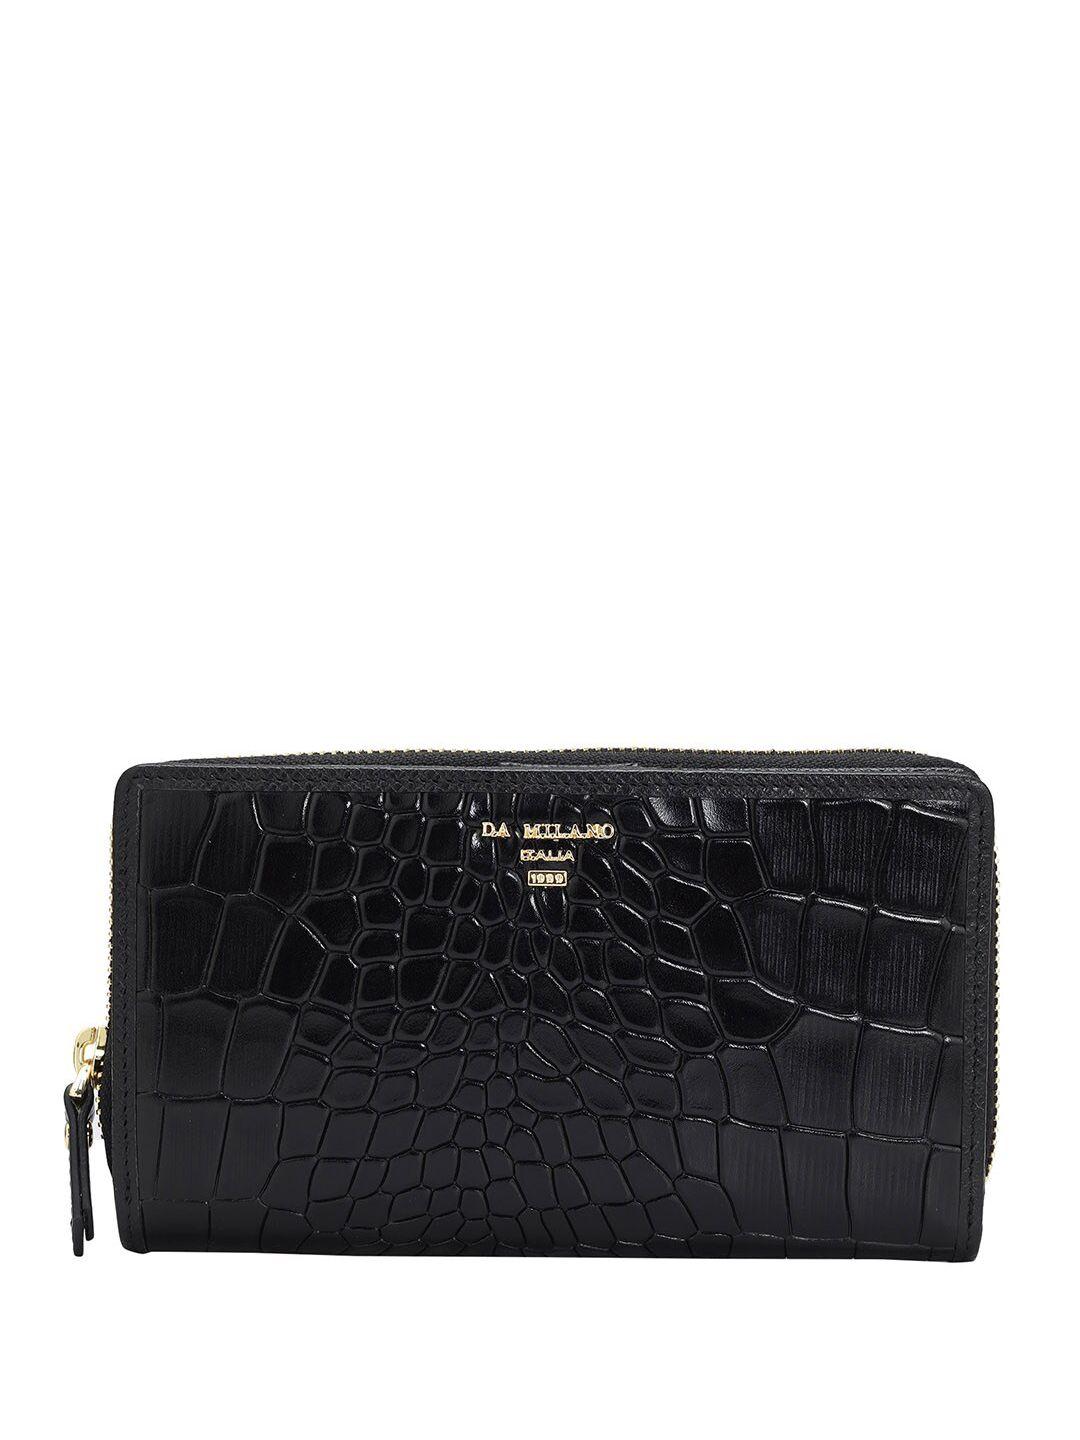 da-milano-women-textured-leather-zip-around-wallet